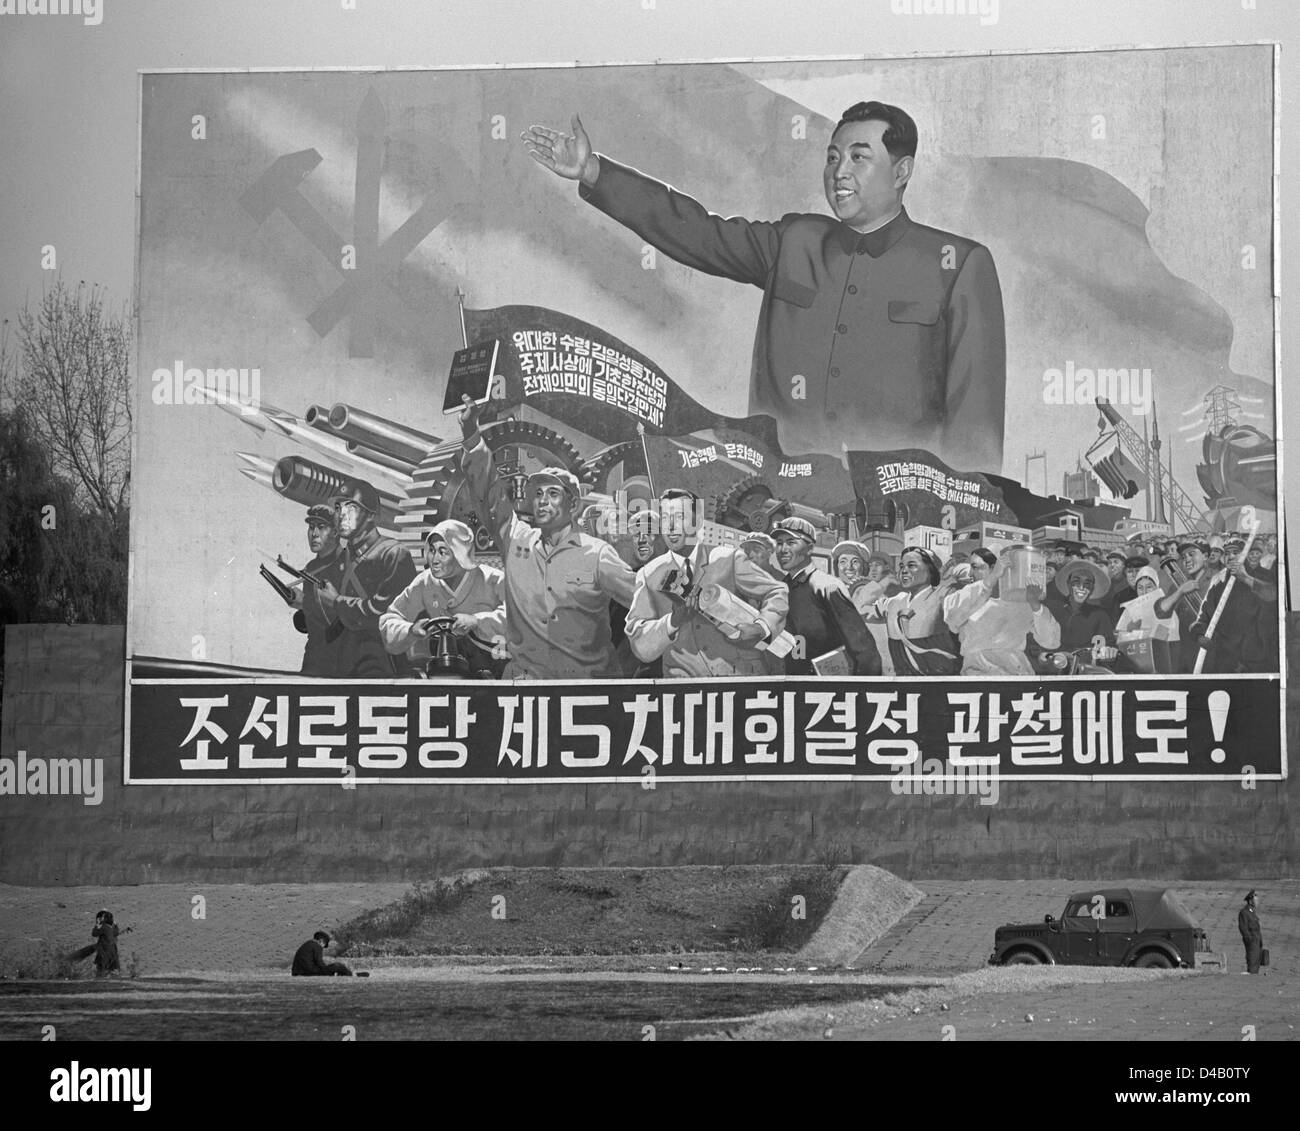 La propaganda del dittatore della Corea del nord Kim II Sung (ex Kim Lr Sen) a Pyongyang, capitale del coreano Repubblica Democratica Popolare, fotografato il 9 novembre nel 1971. Foto: ddrbildarchiv.de / Klaus Morgenstern - GESPERRT FÜR BILDFUNK Foto Stock